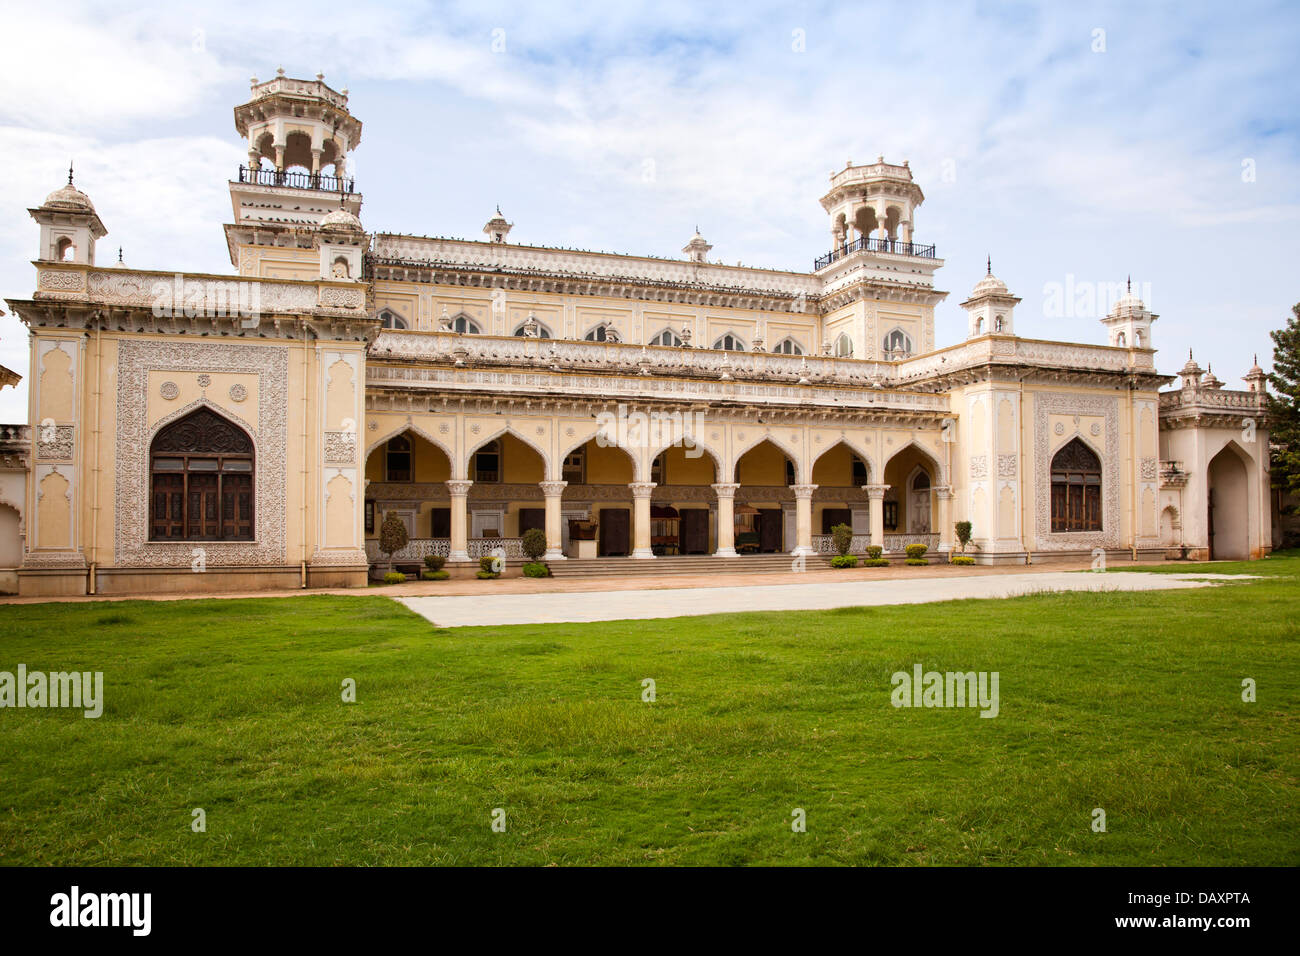 Façade d'un palais, Chowmahalla Palace, Hyderabad, Andhra Pradesh, Inde Banque D'Images